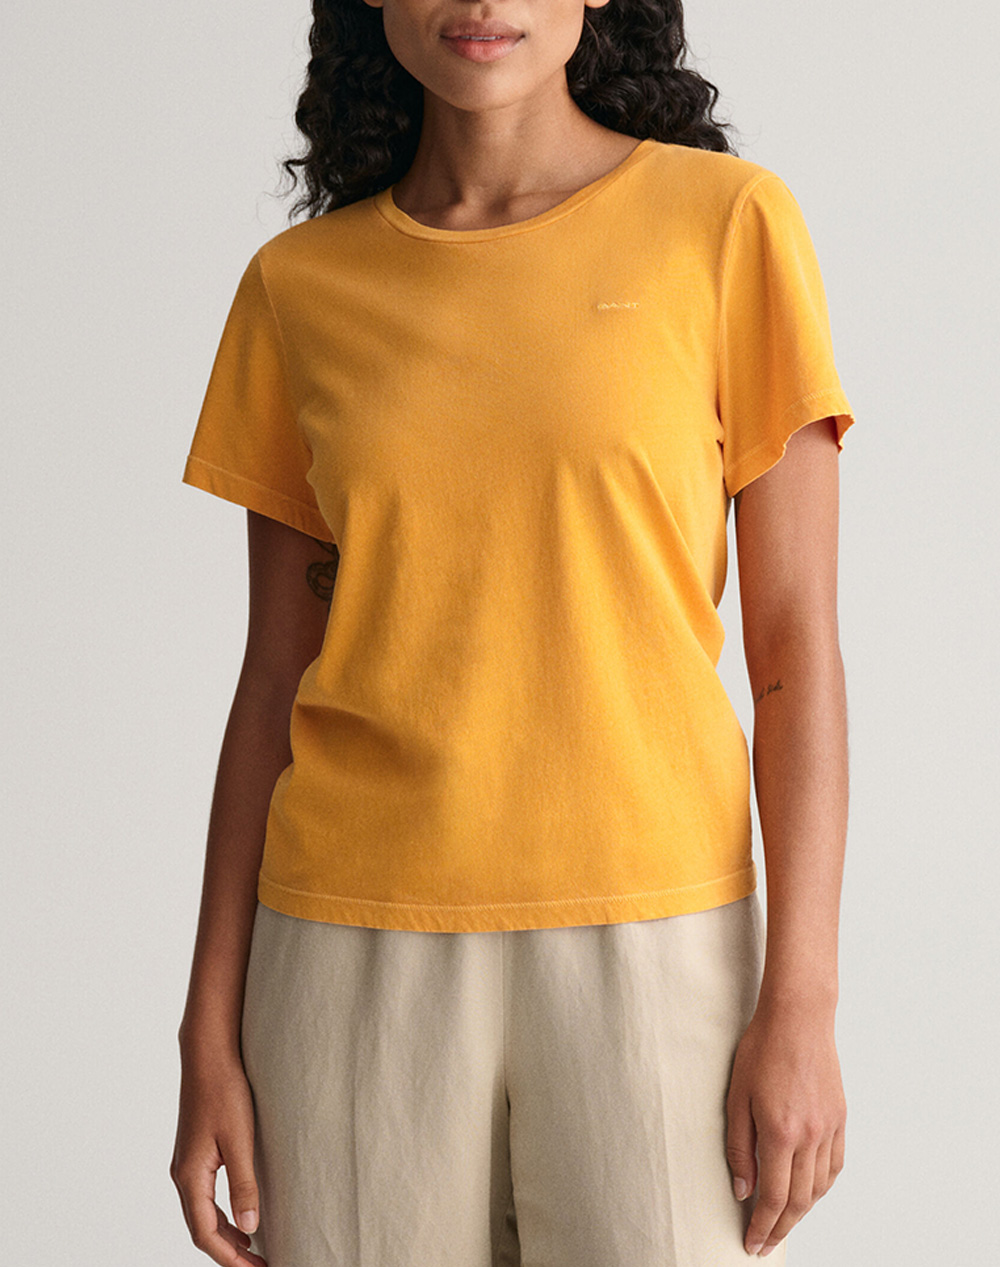 Γυναικεία t-shirt σε κανονική γραμμή, κοντομάνικη, με στρογγυλή λαιμόκοψη και κέντημα λογότυπου στο στήθος. (Σύνθεση: 100% Βαμβάκι)